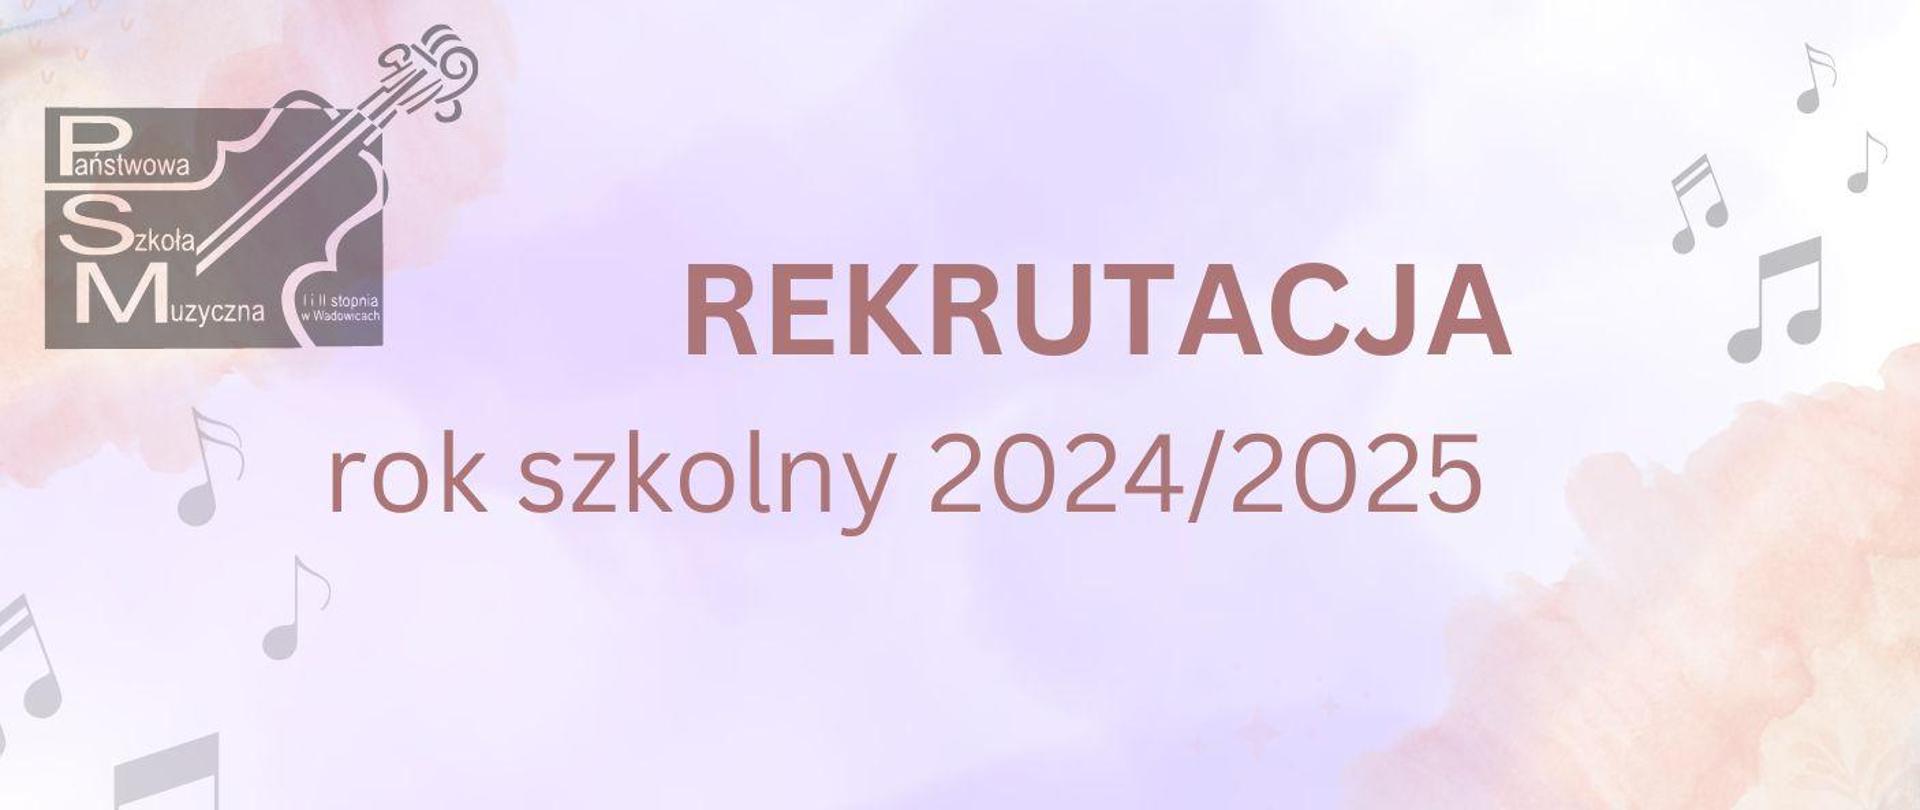 Rekrutacja rok szkolny 2024/2025